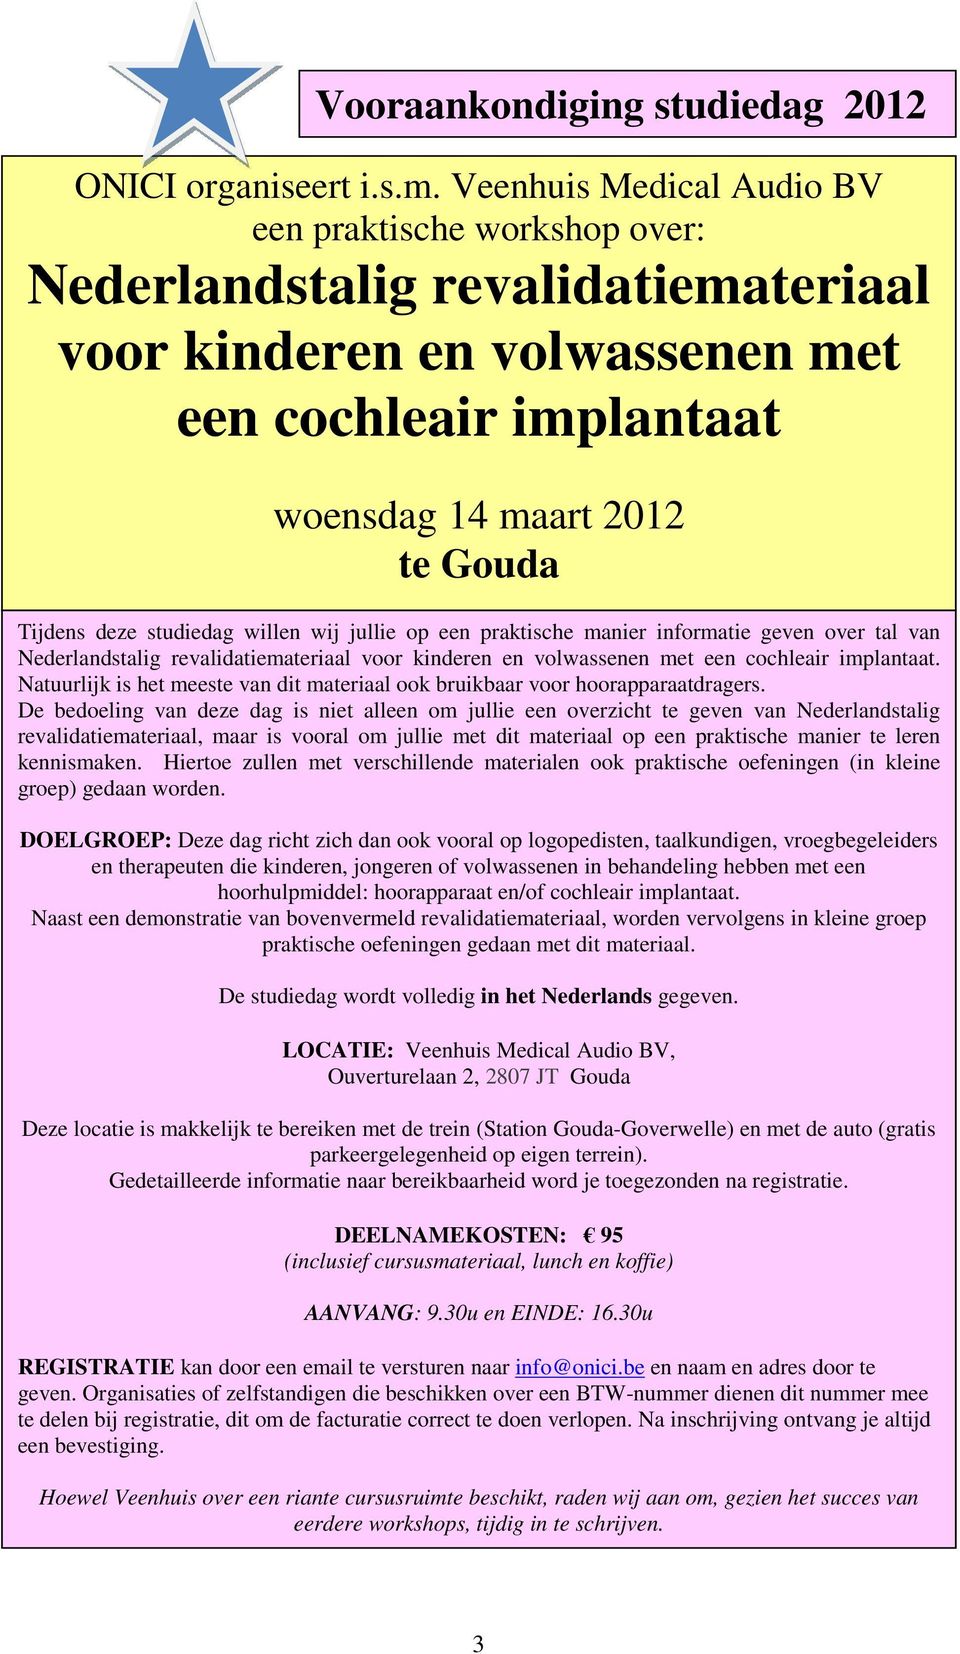 studiedag willen wij jullie op een praktische manier informatie geven over tal van Nederlandstalig revalidatiemateriaal voor kinderen en volwassenen met een cochleair implantaat.